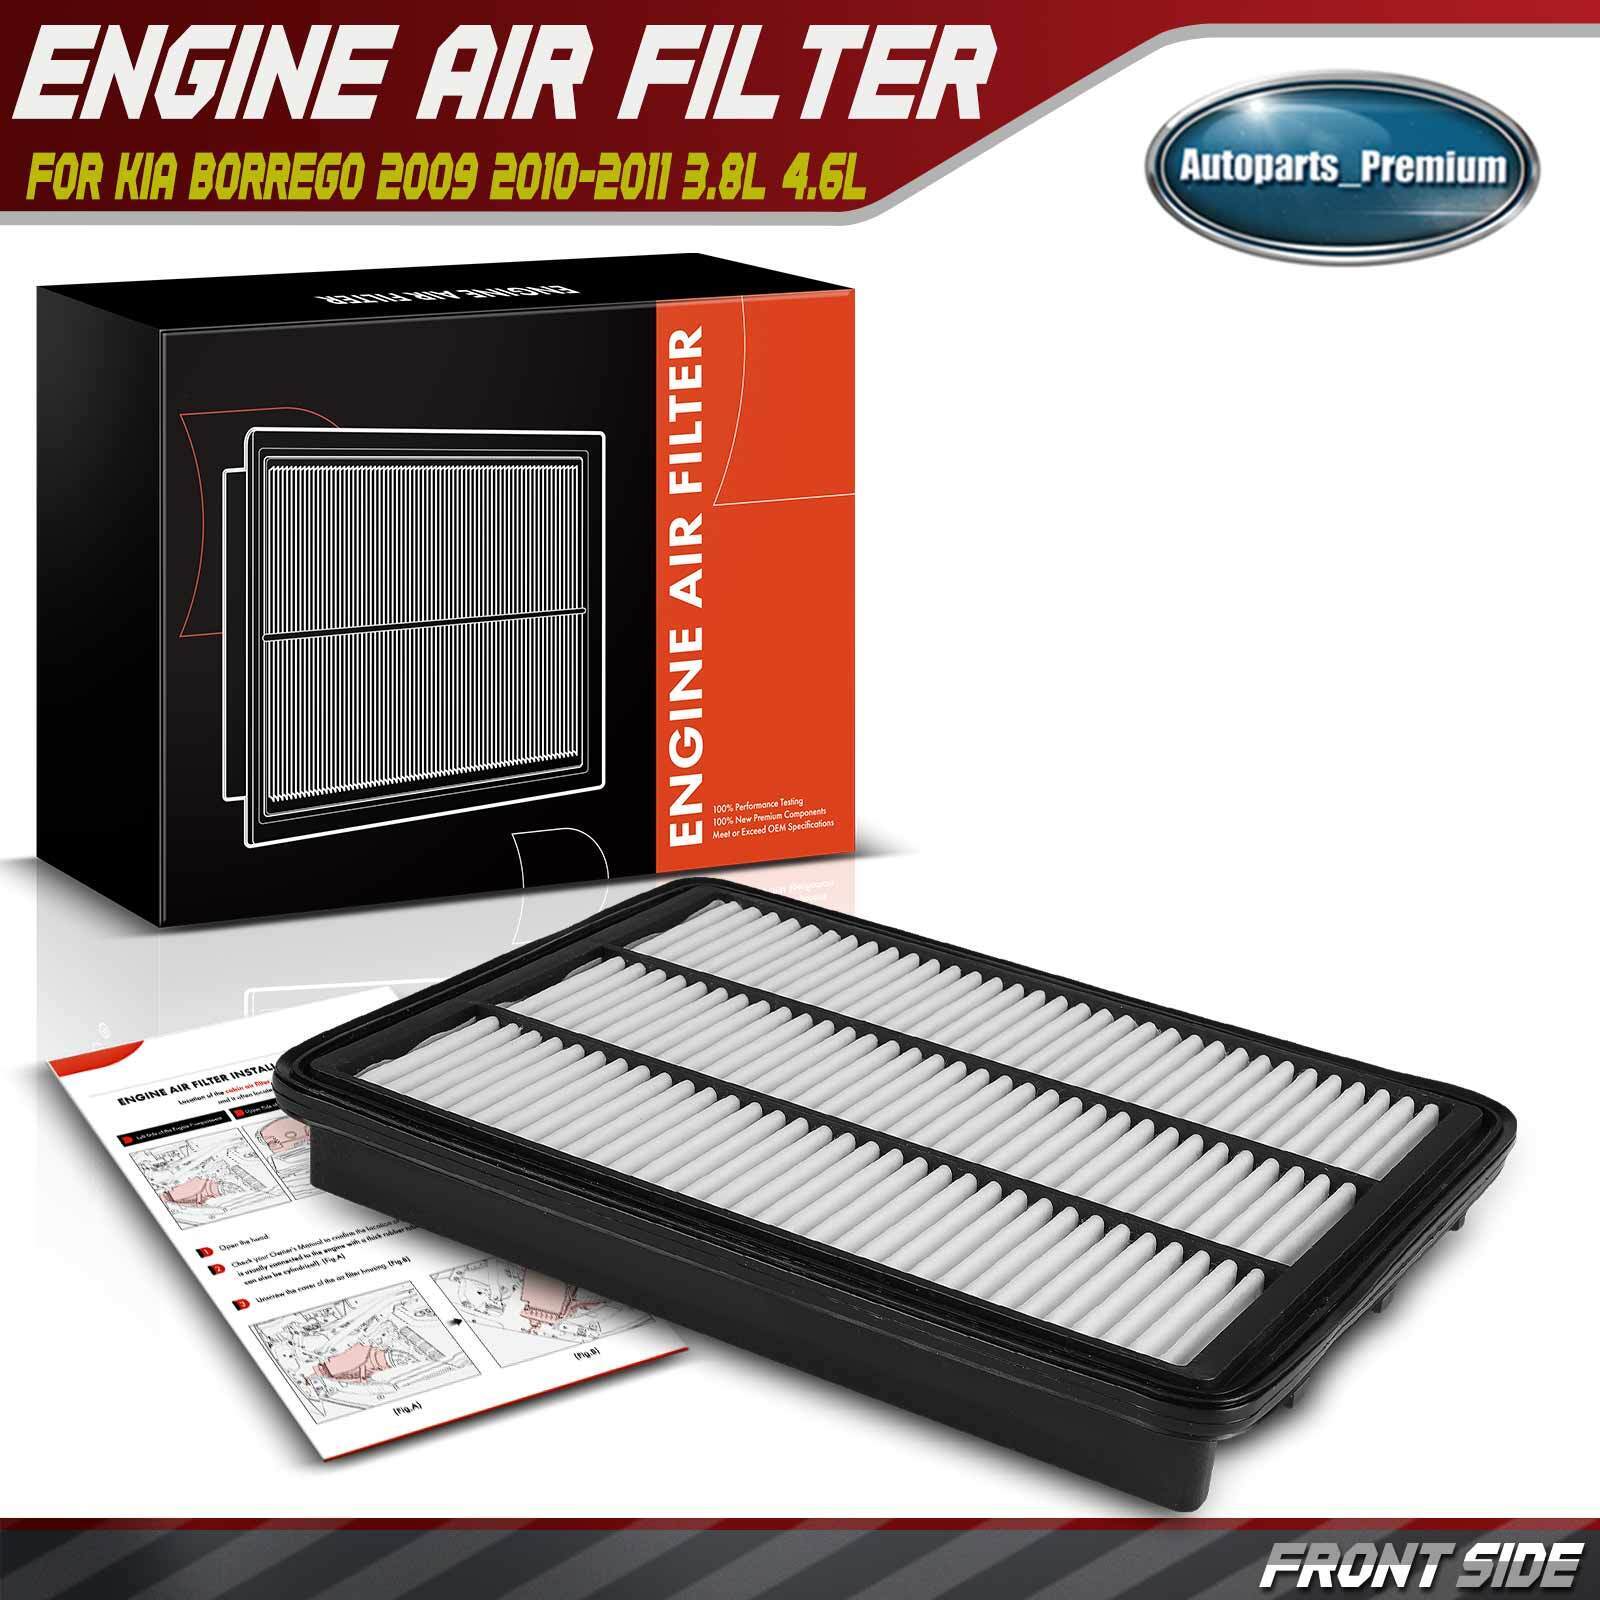 New Engine Air Filter for Kia Borrego 2009 2010-2011 V6 3.8L 4.6L Rigid Panel